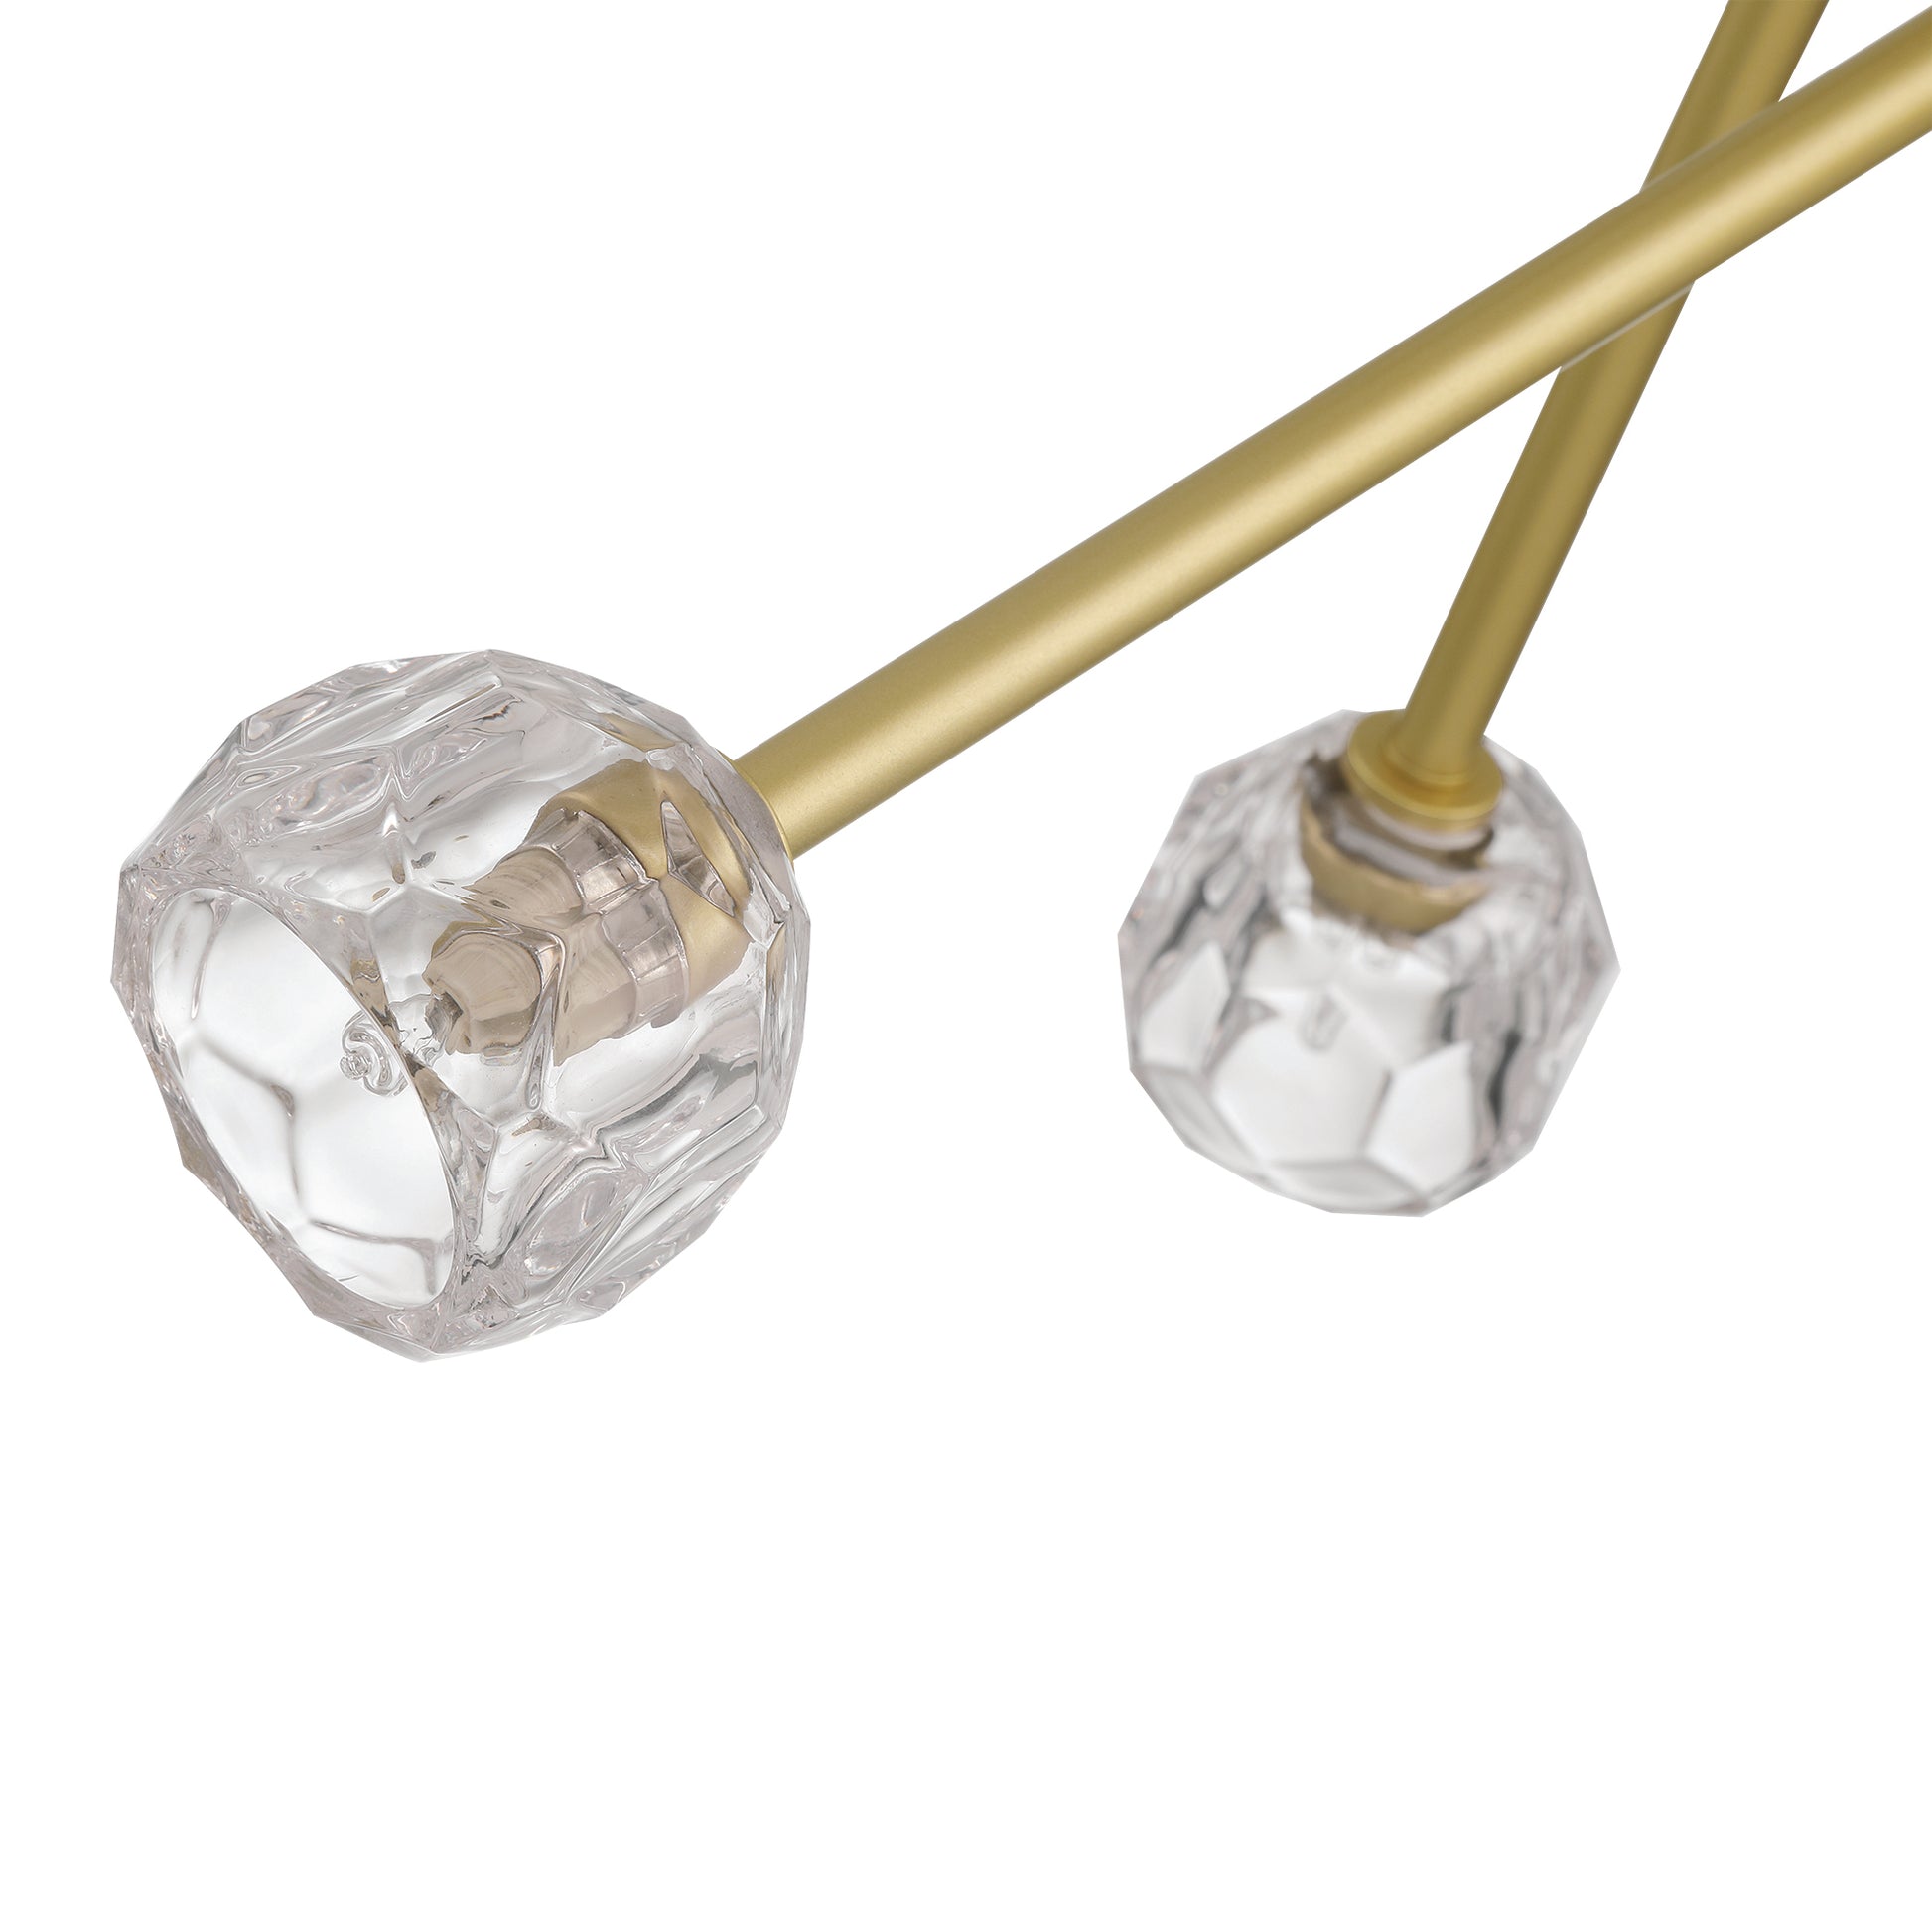 8 light sputnik glass chandelier (8) by ACROMA